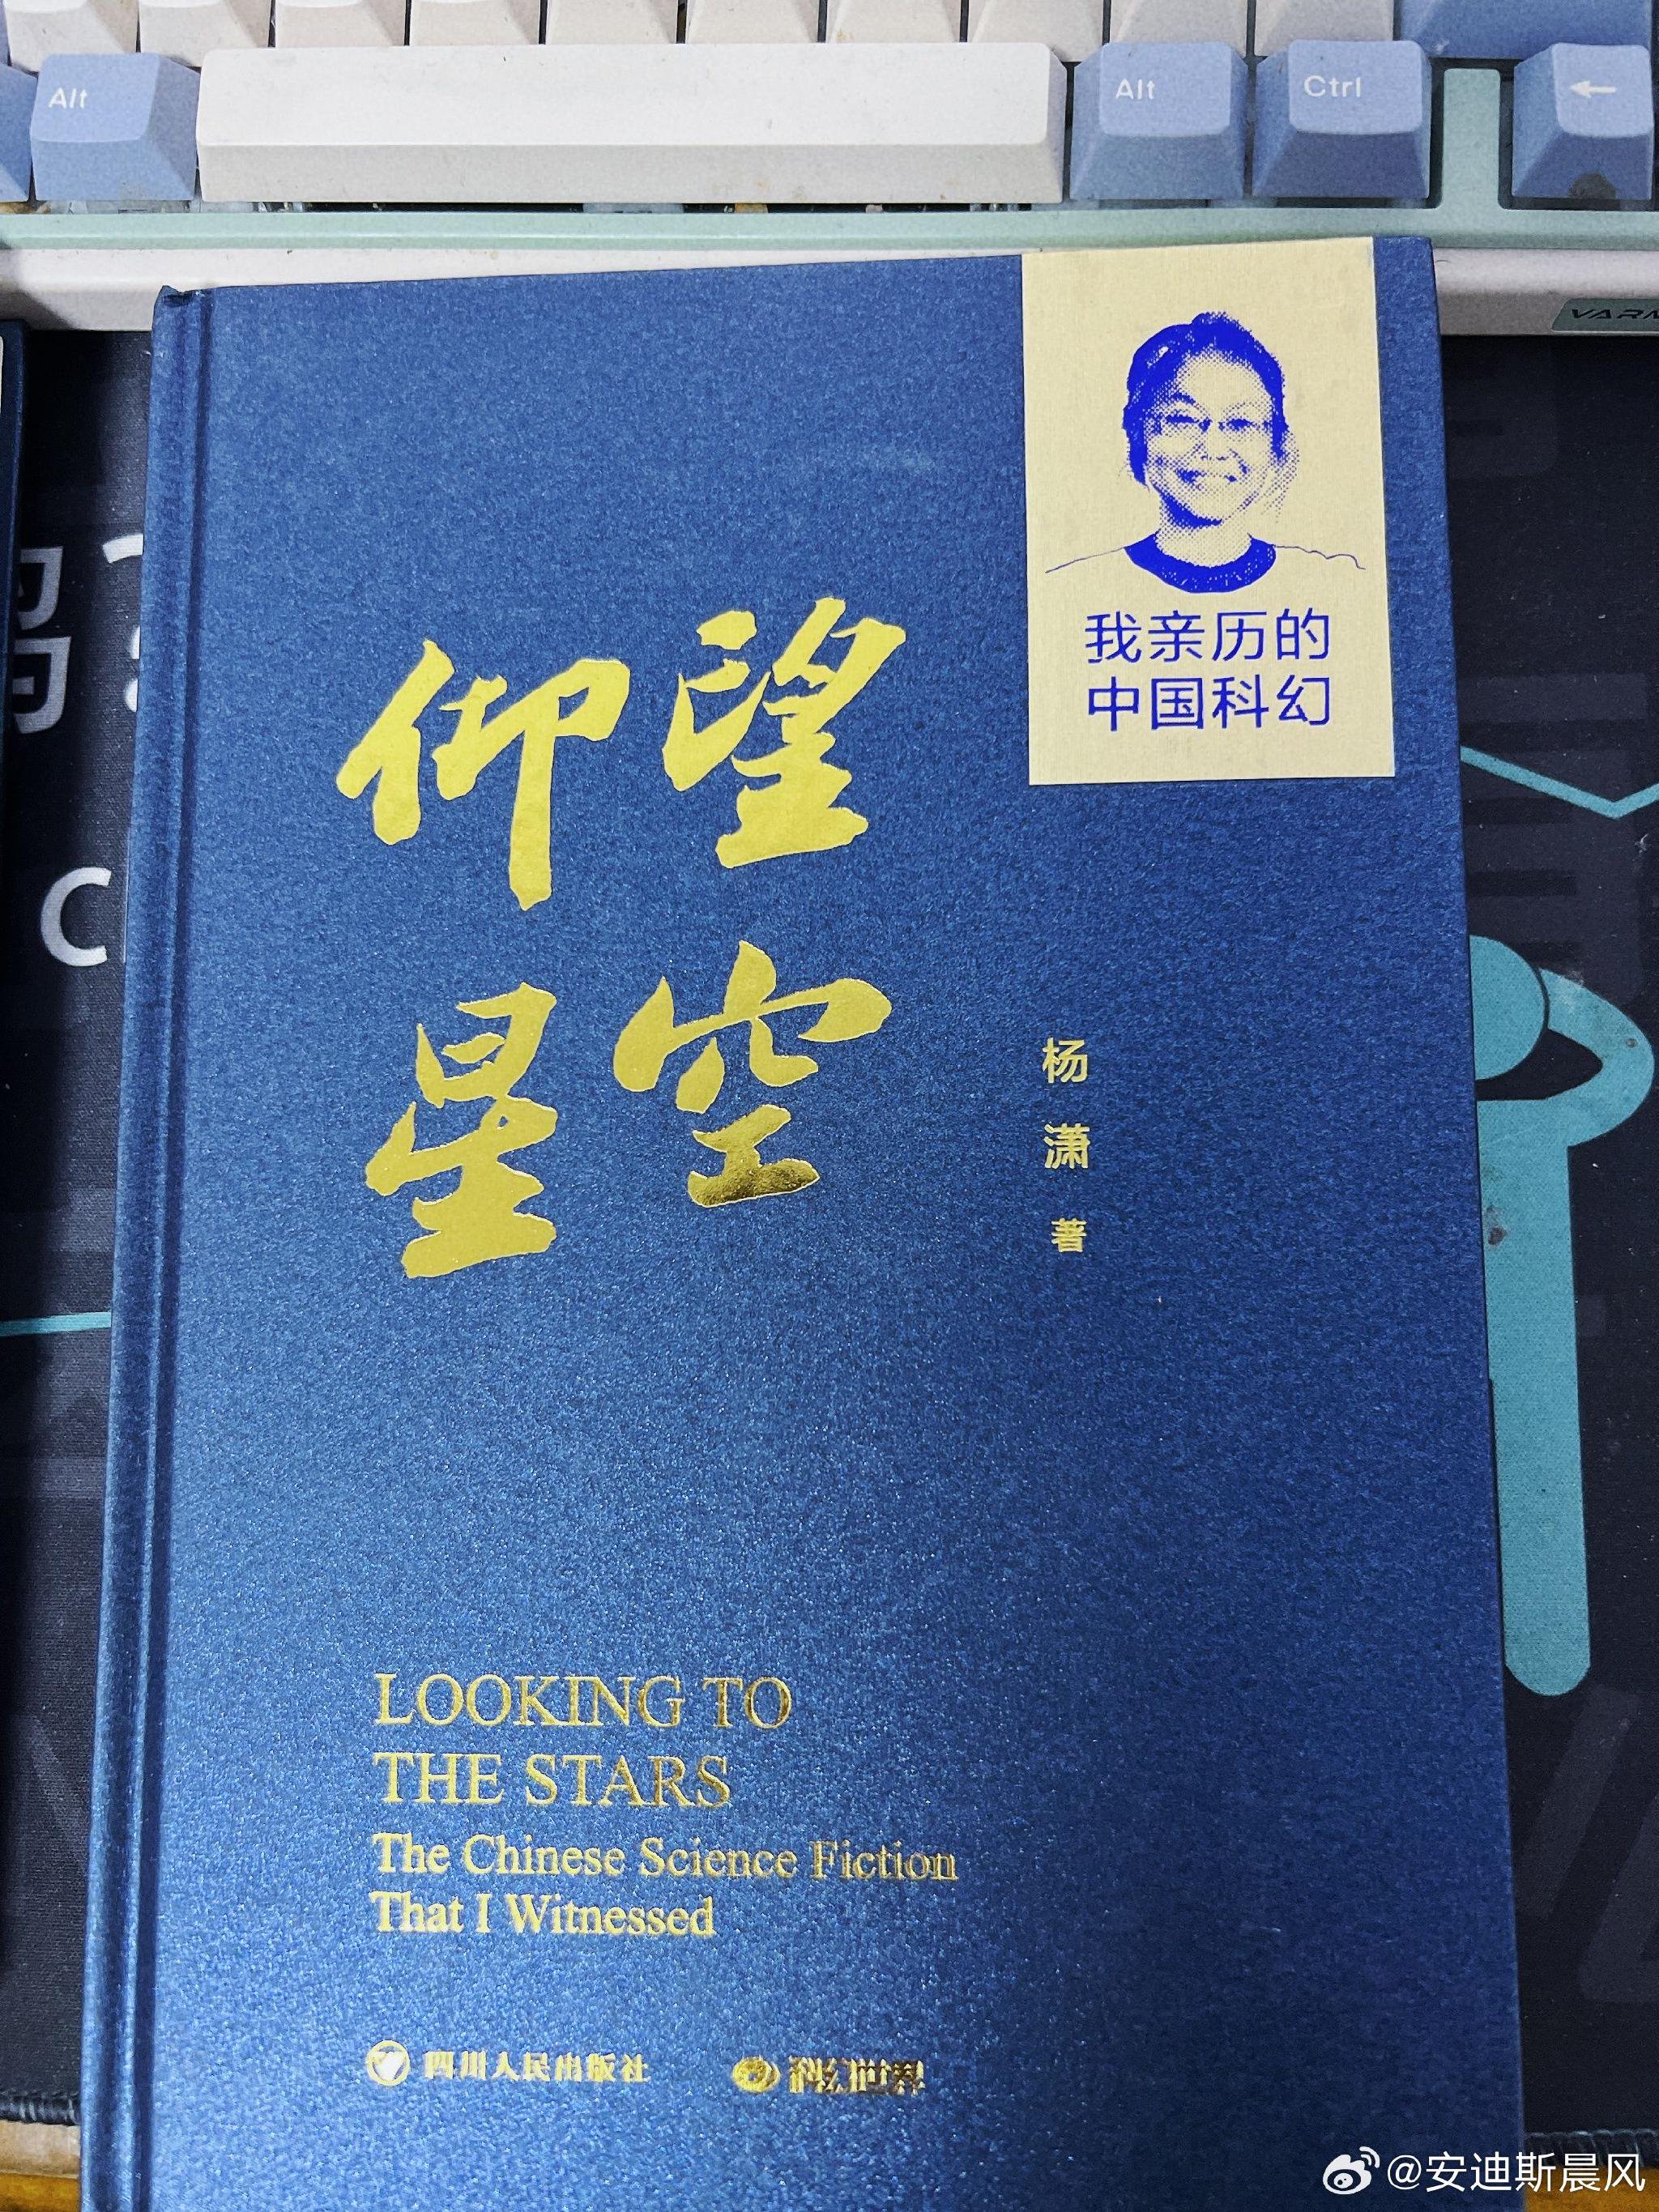 收到了中国科幻元老杨潇老师、谭楷老师的新书《仰望星空》和《银河礼赞》…